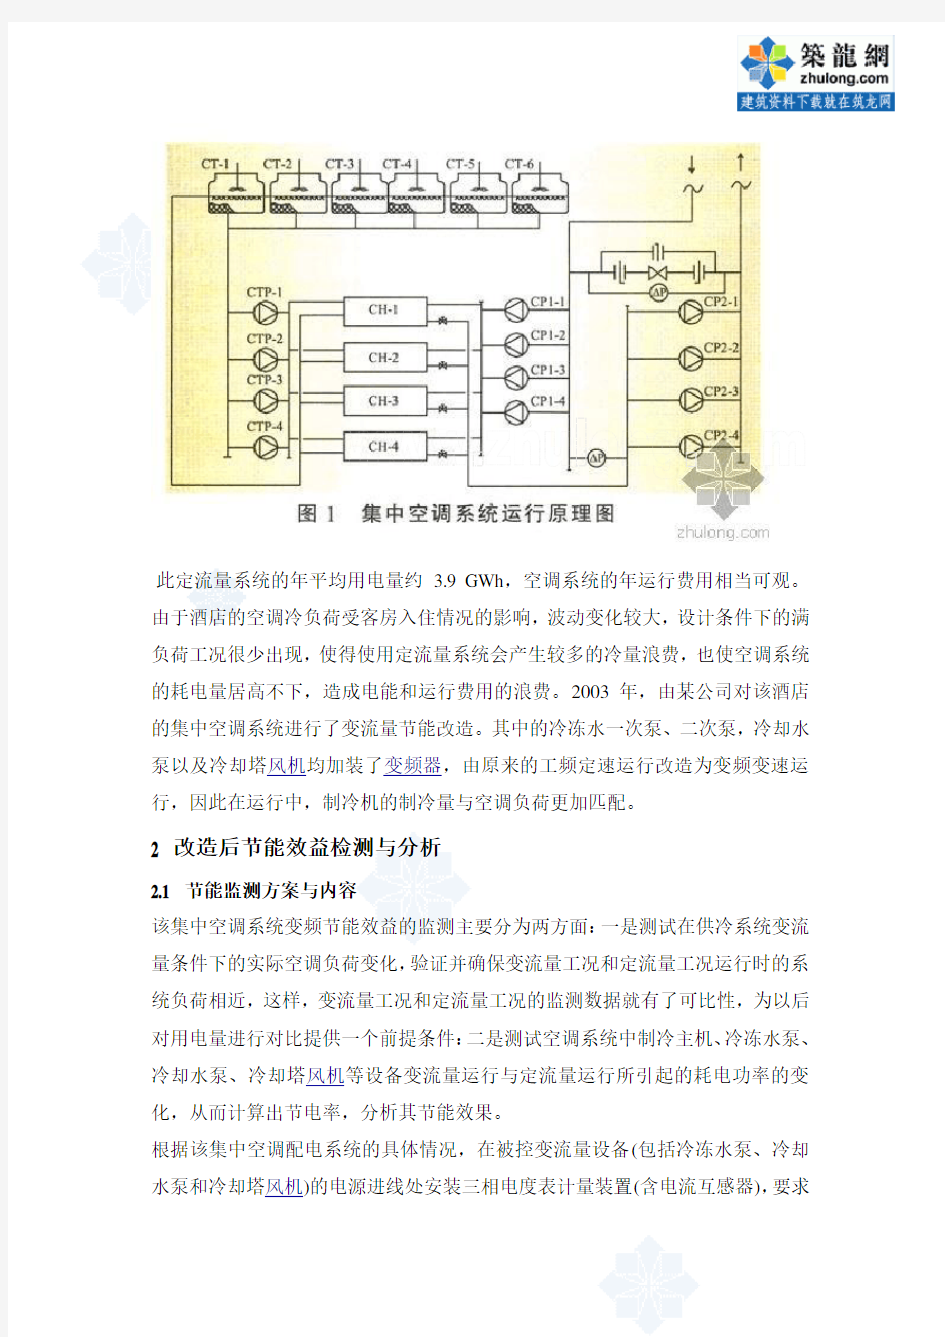 上海市某酒店中央空调智能节能方案_secret